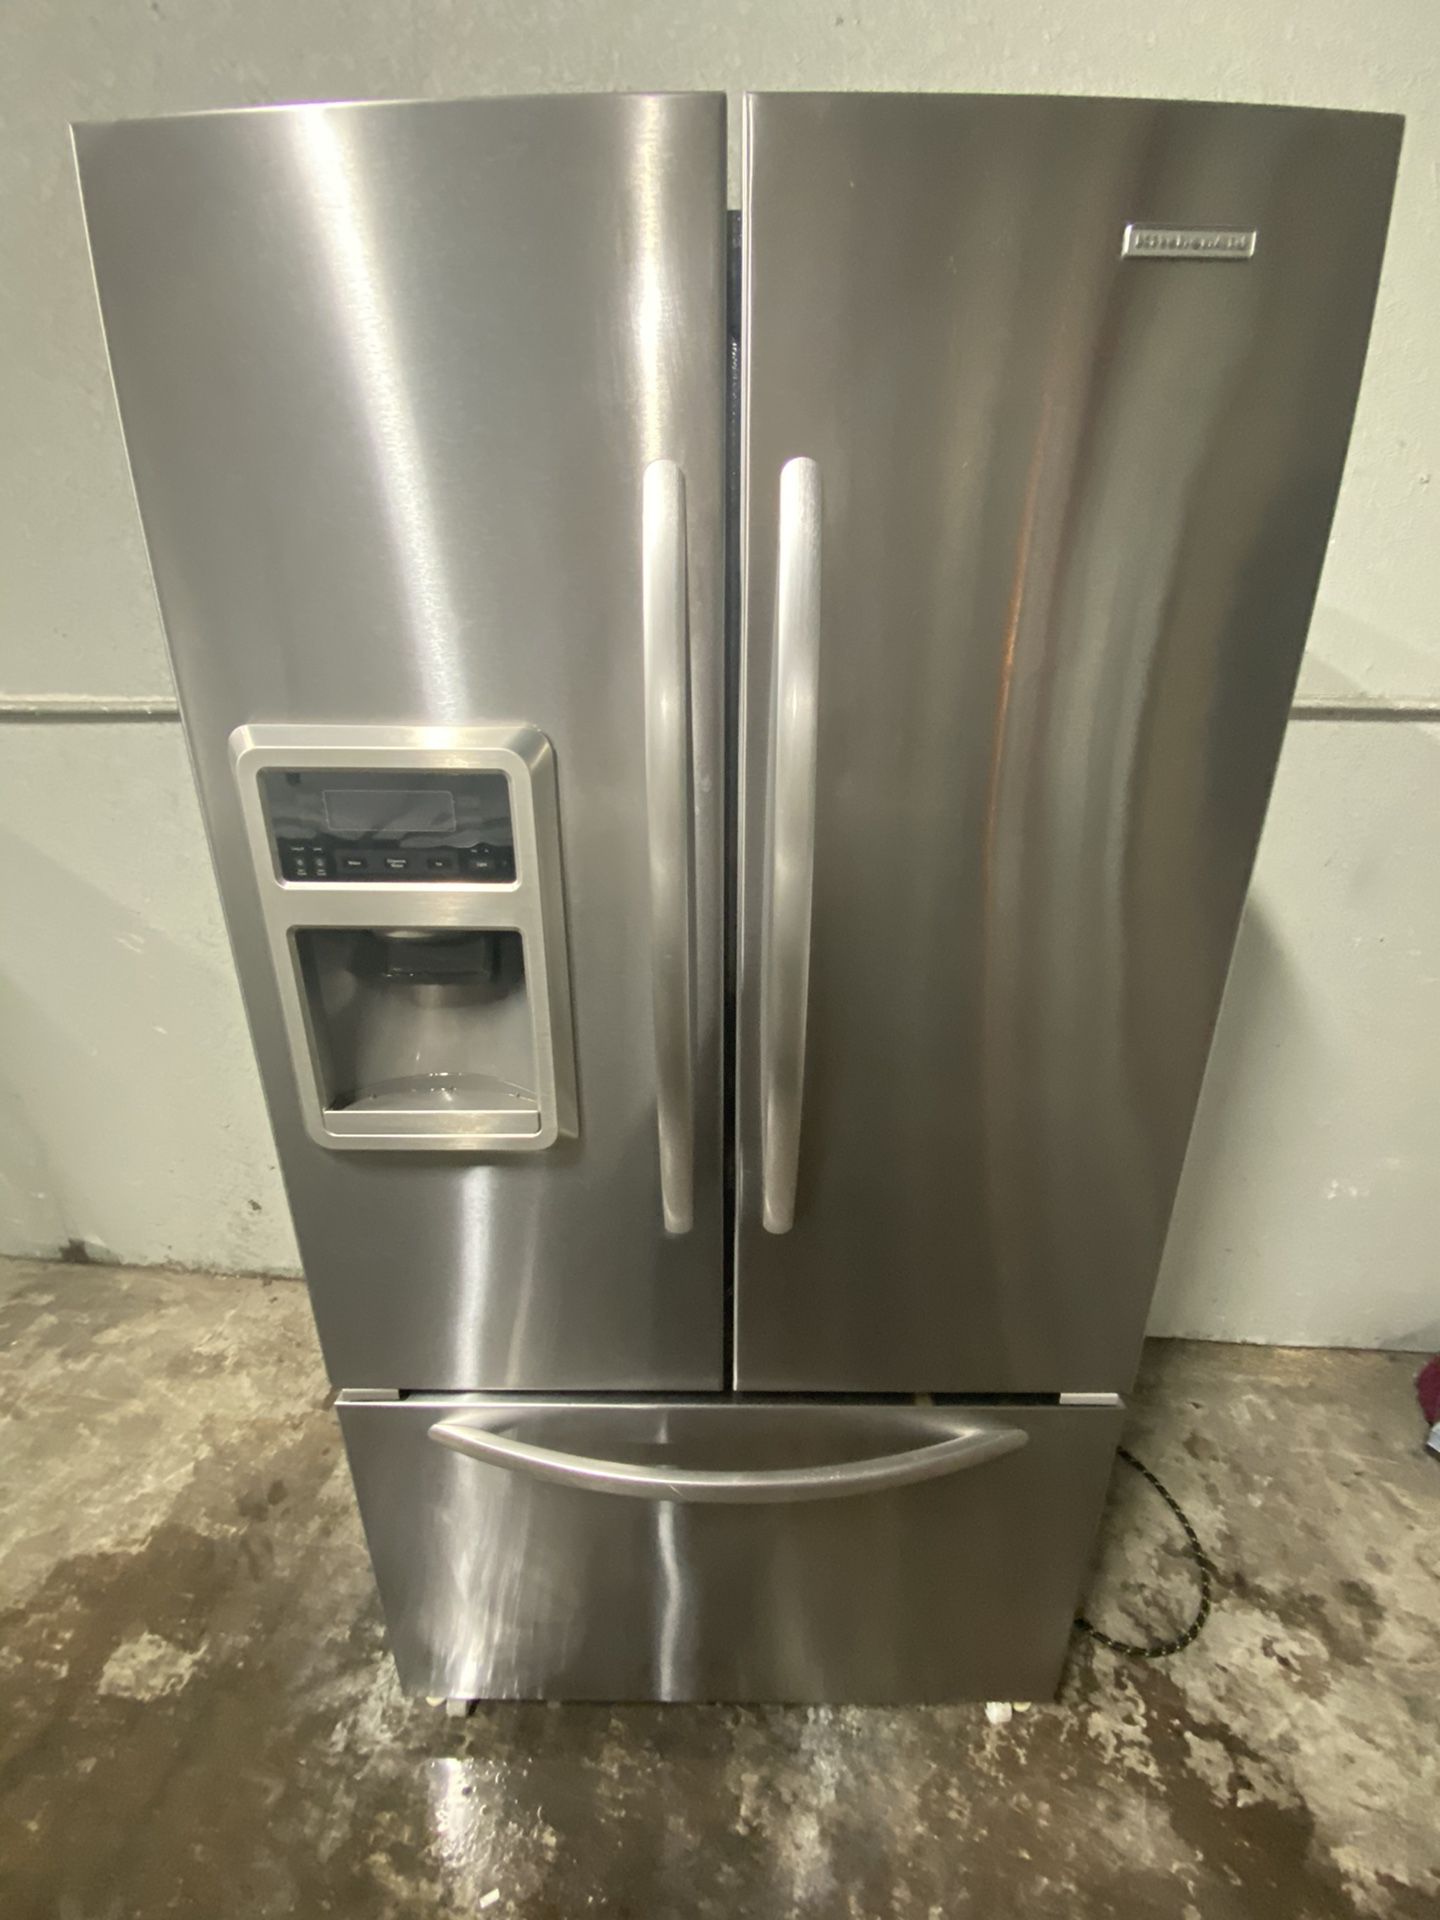 Kitchen aid counter depth refrigerator